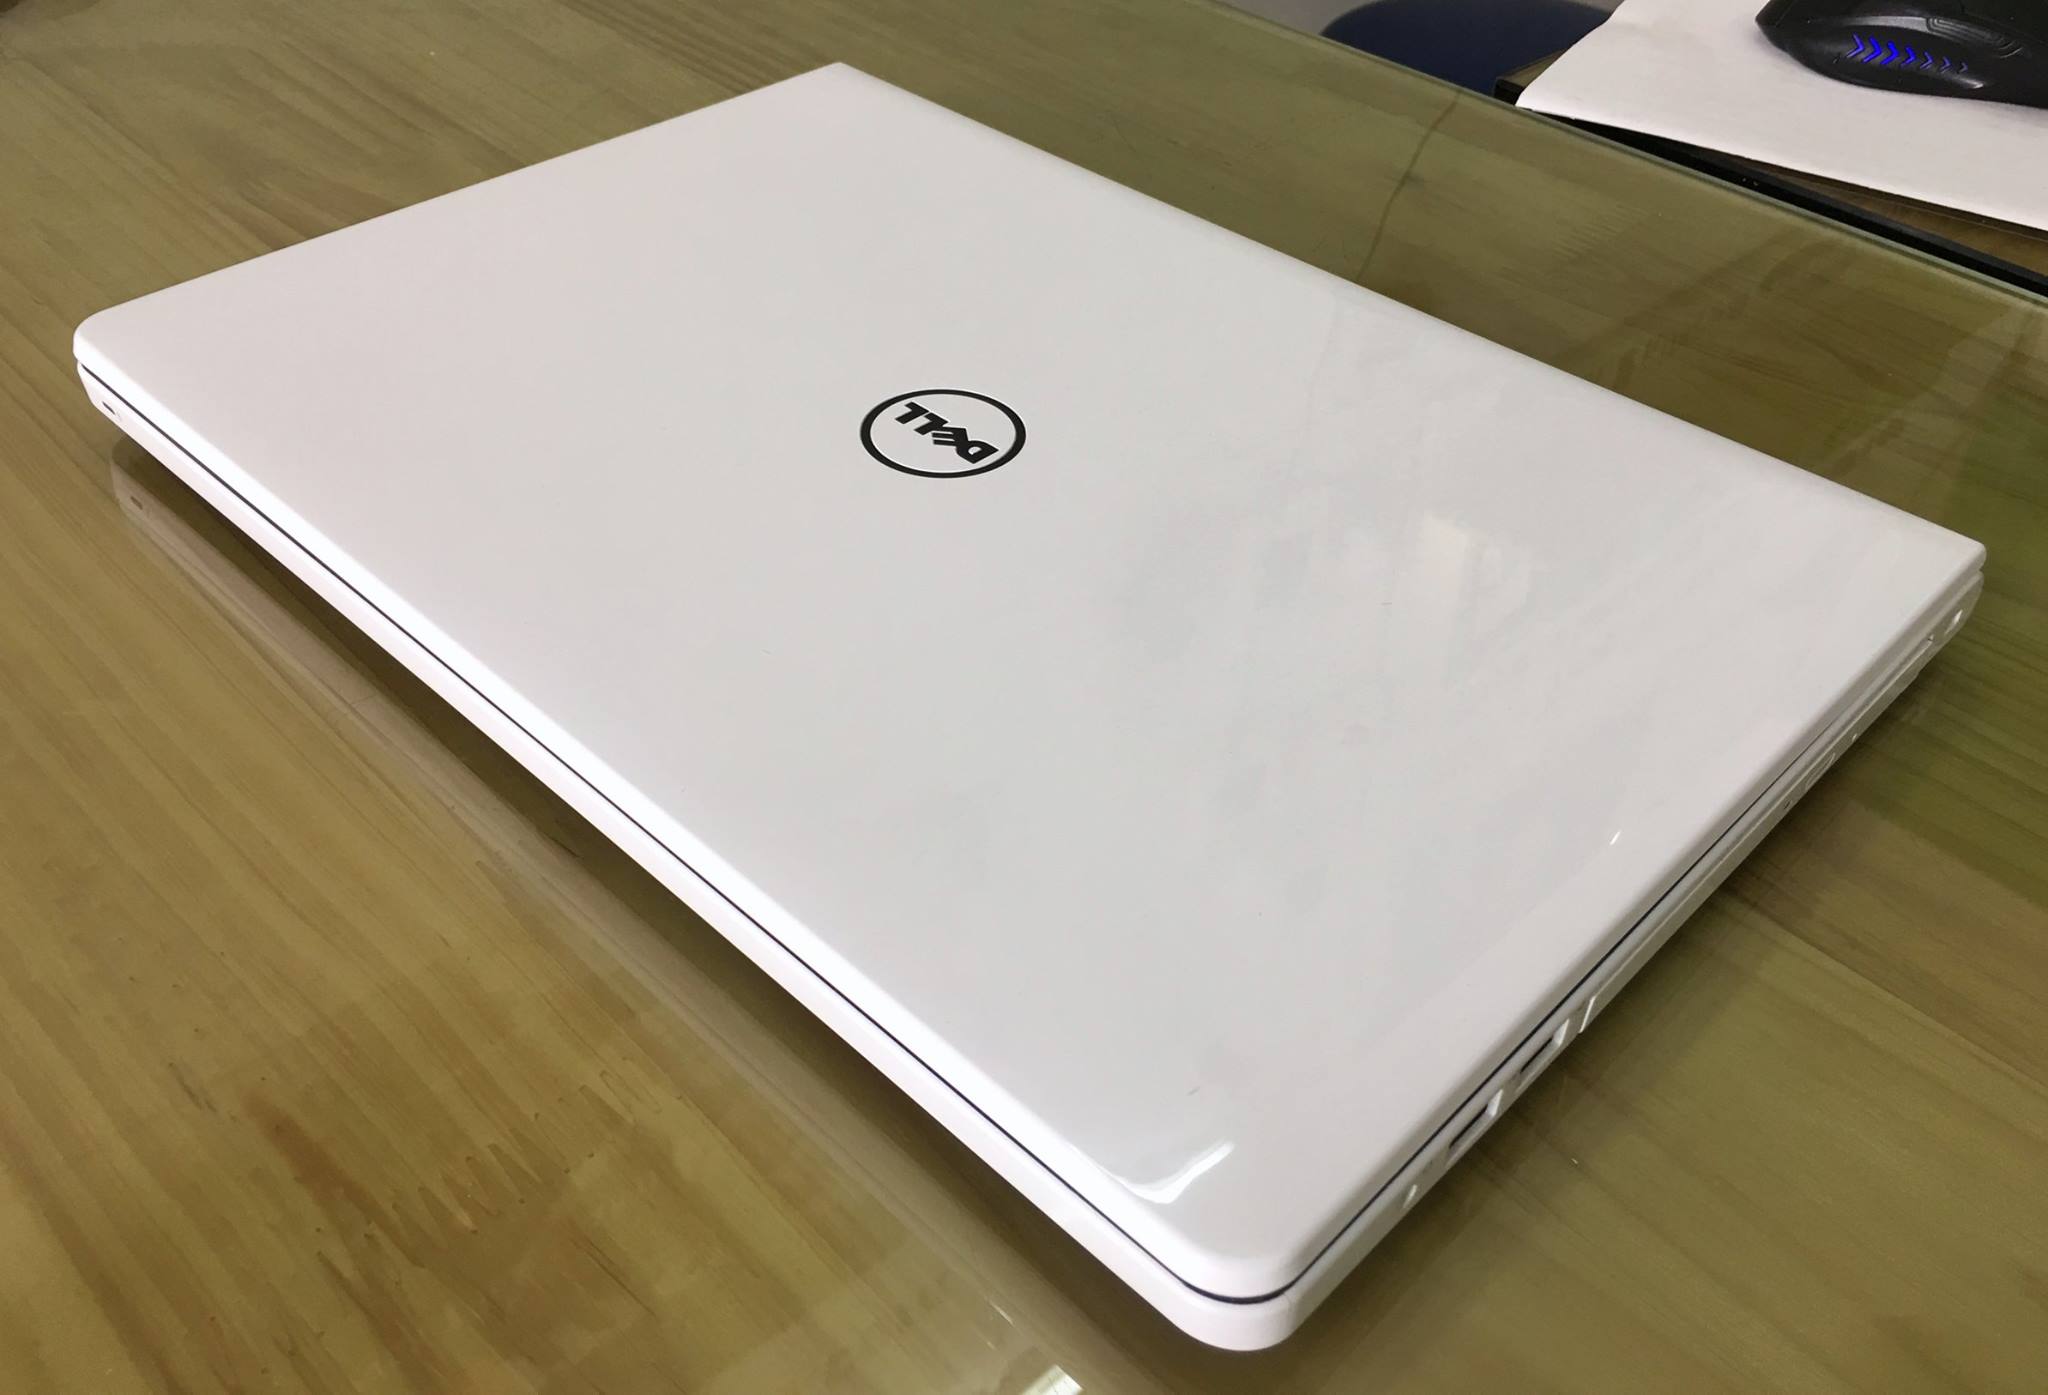 Laptop Dell Inspiron 14R - N5458 M4I3235W-8.jpg